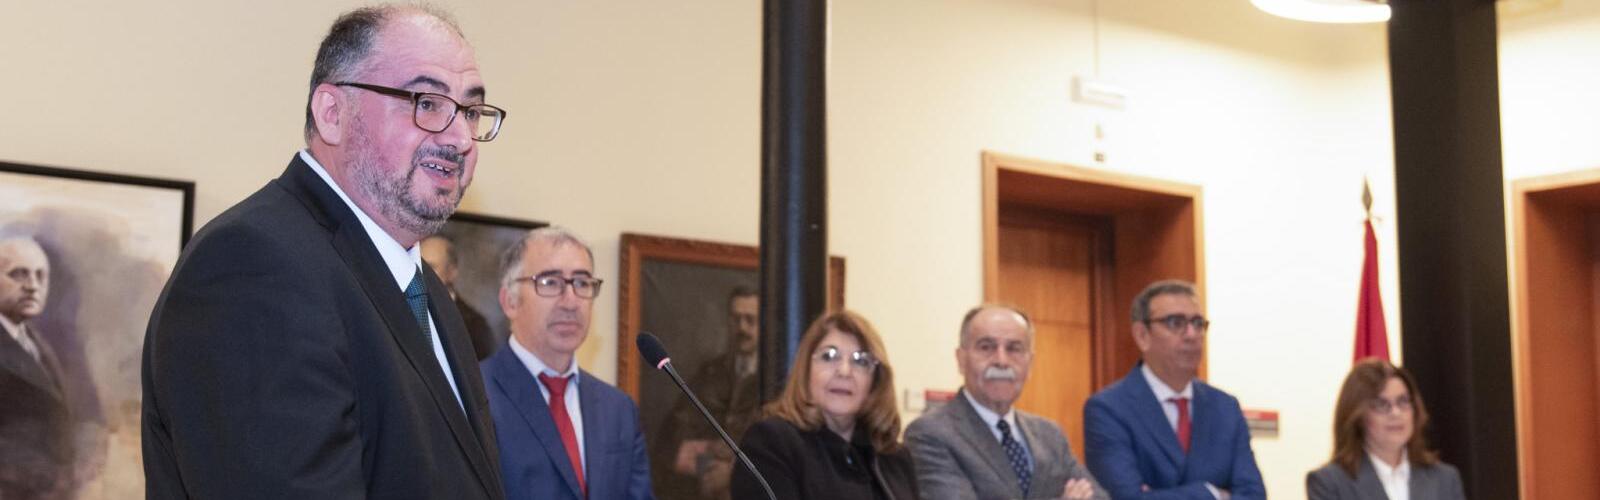 La Universidad de Murcia y la Consejería de Educación se unen para llevar la Constitución a los centros escolares